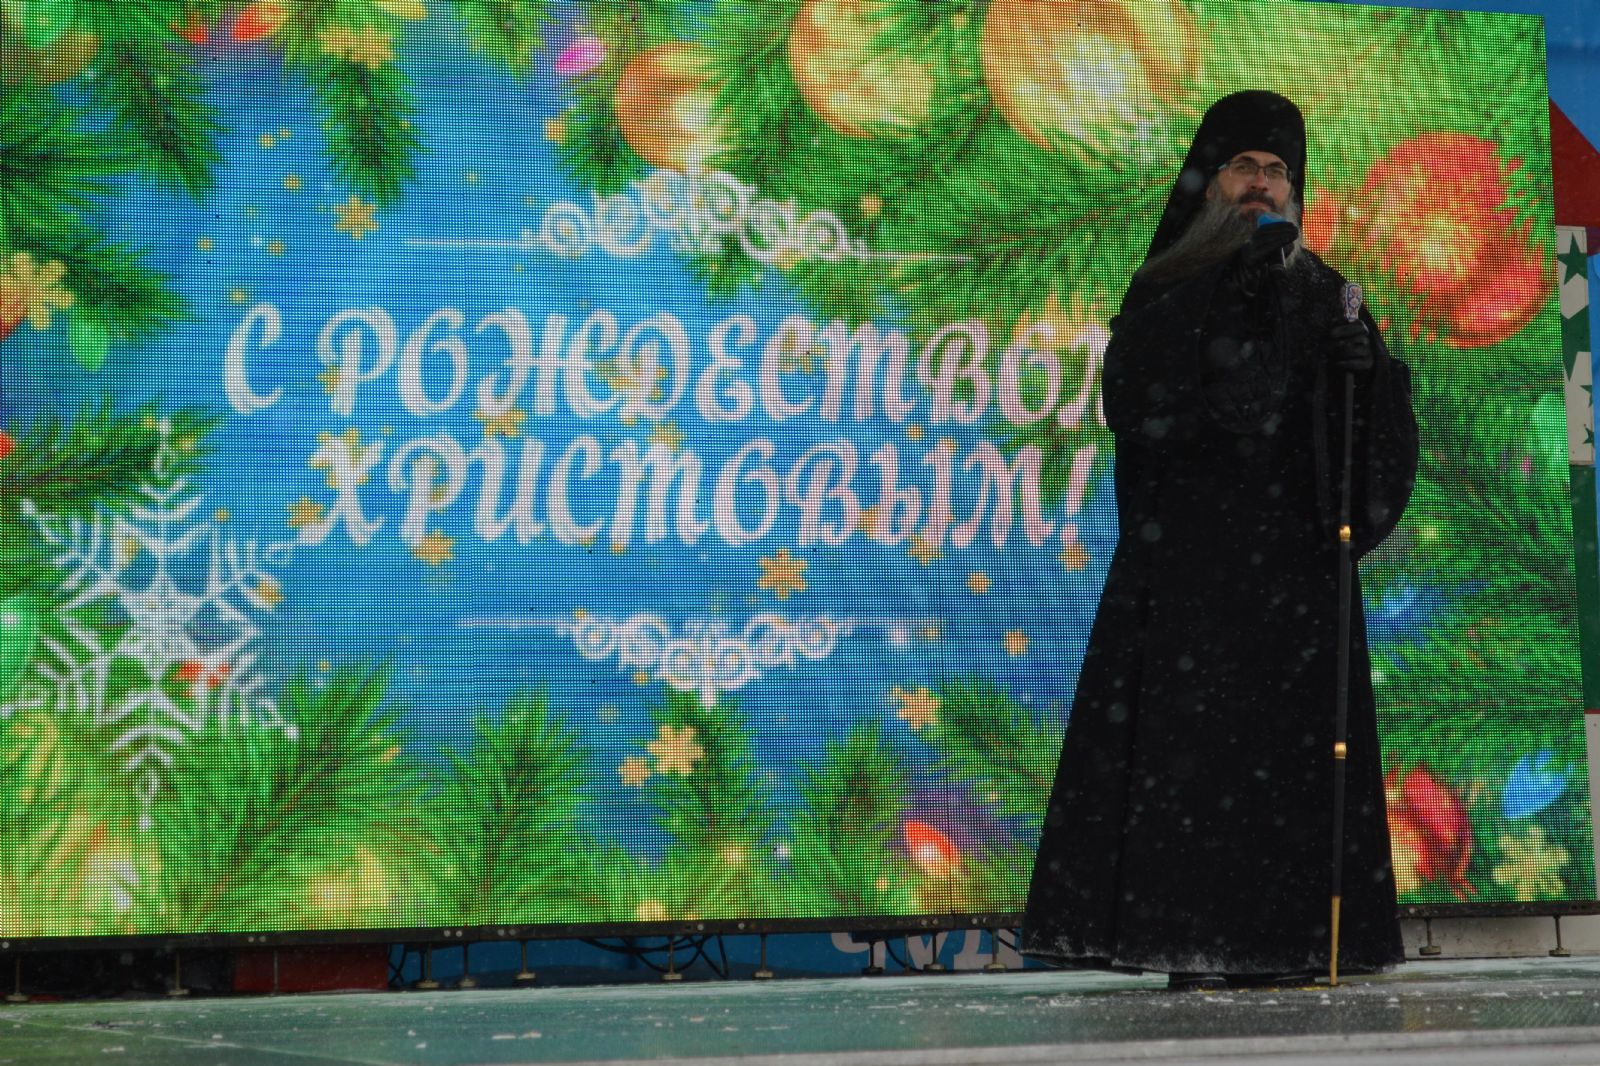 Епископ Уссурийский Иннокентий выступил с Рождественским поздравлением на центральной площади